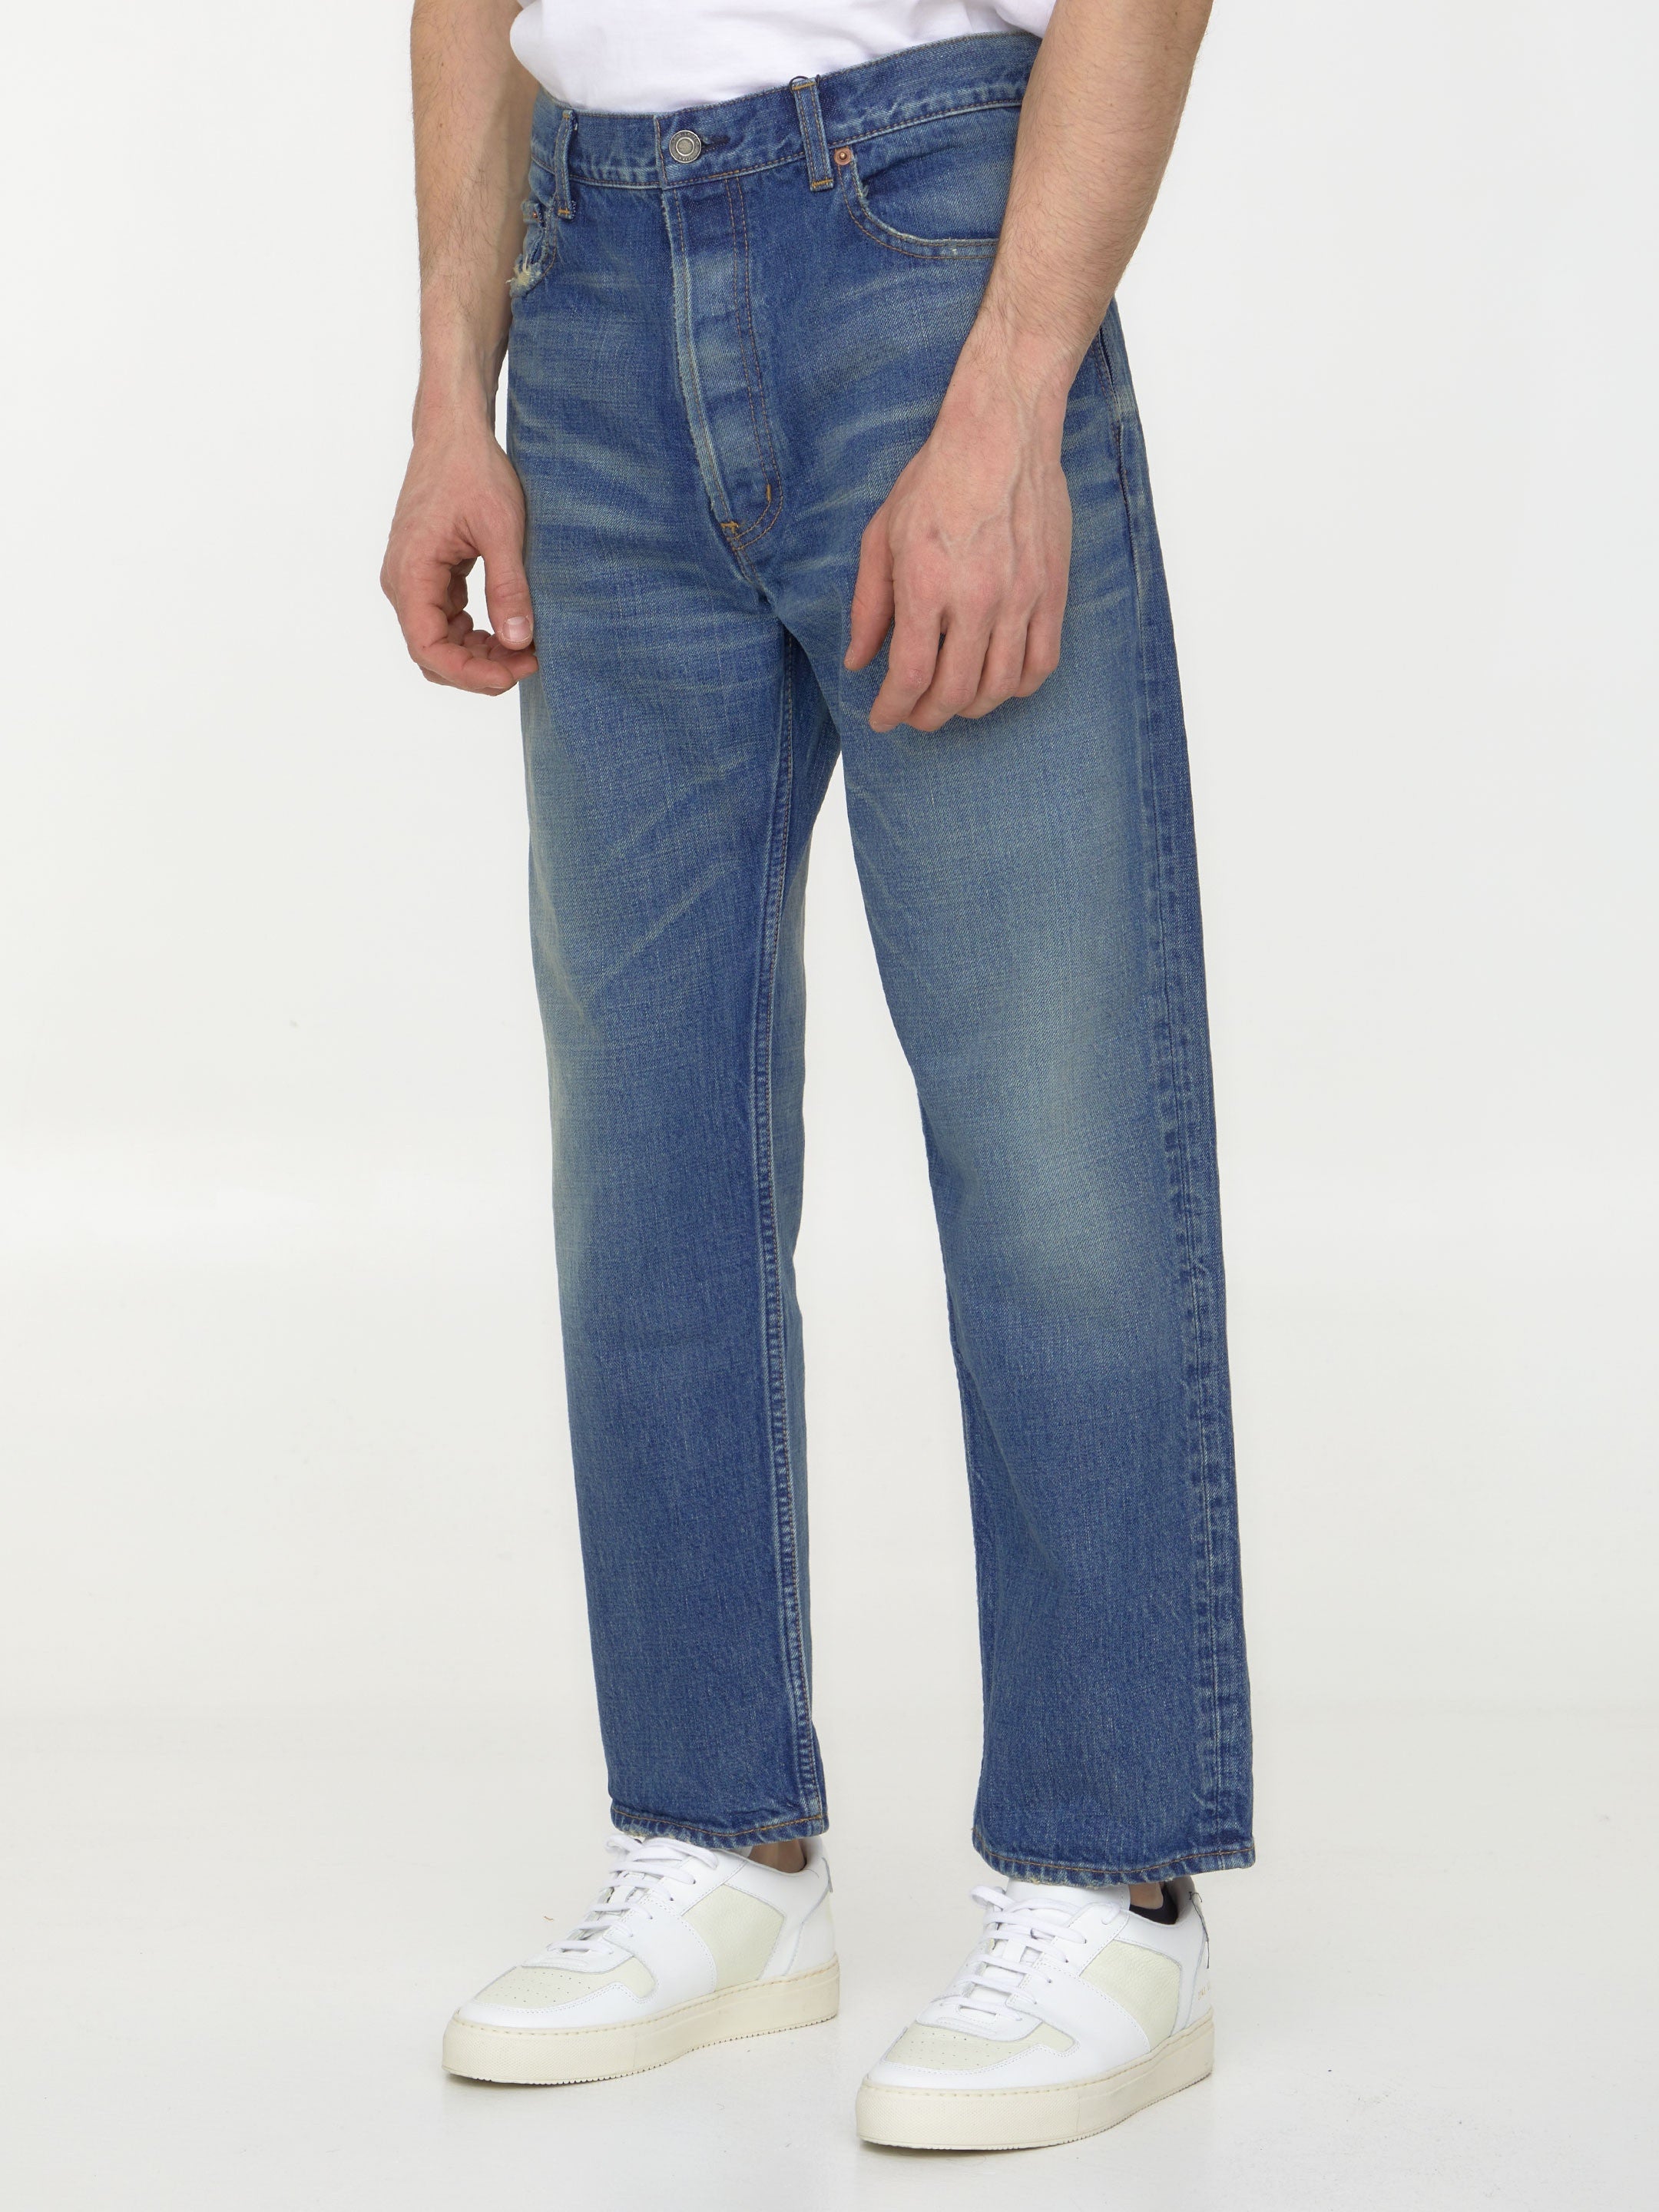 SAINT-LAURENT-OUTLET-SALE-Blue-denim-jeans-Jeans-ARCHIVE-COLLECTION-2.jpg